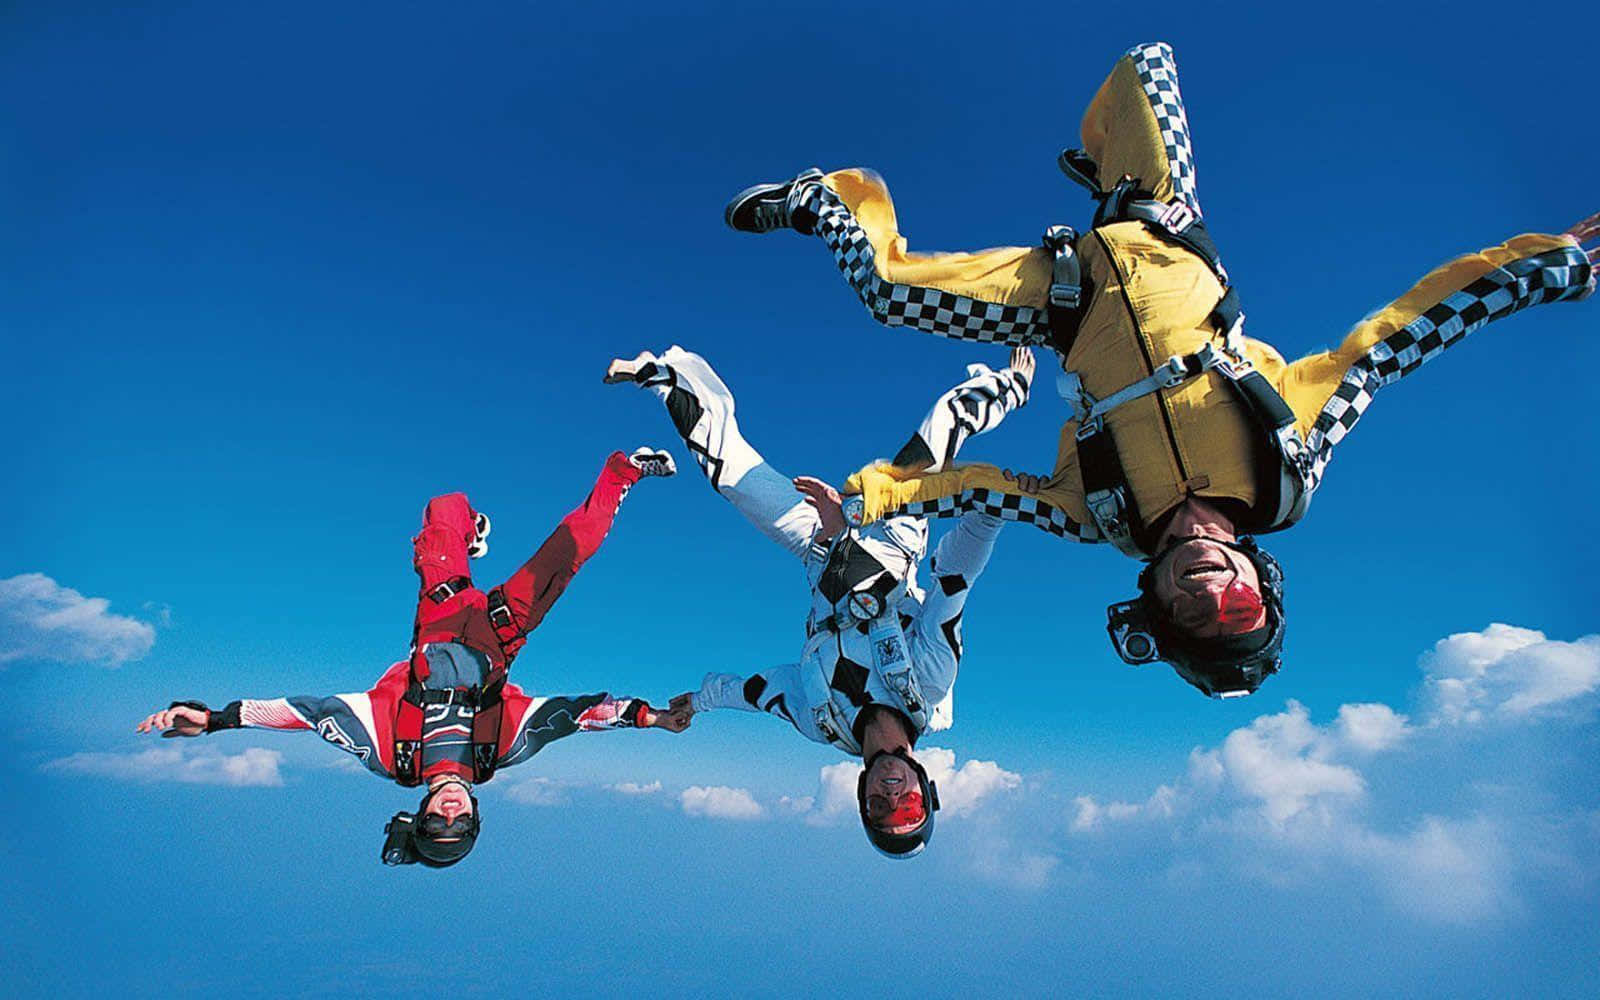 Dreipersonen In Fallschirmkleidung Fliegen In Der Luft.